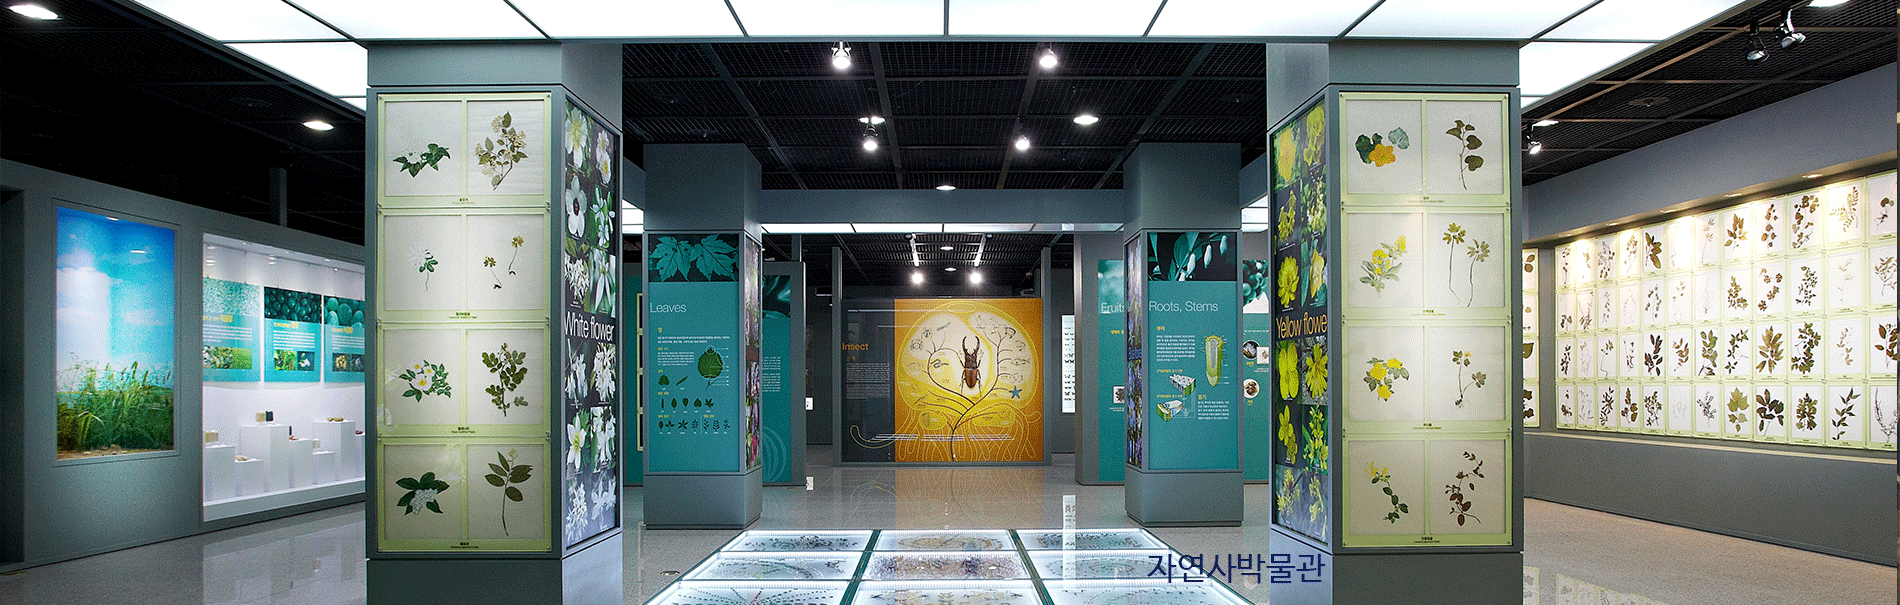 Viện bảo tàng đại học Sungshin